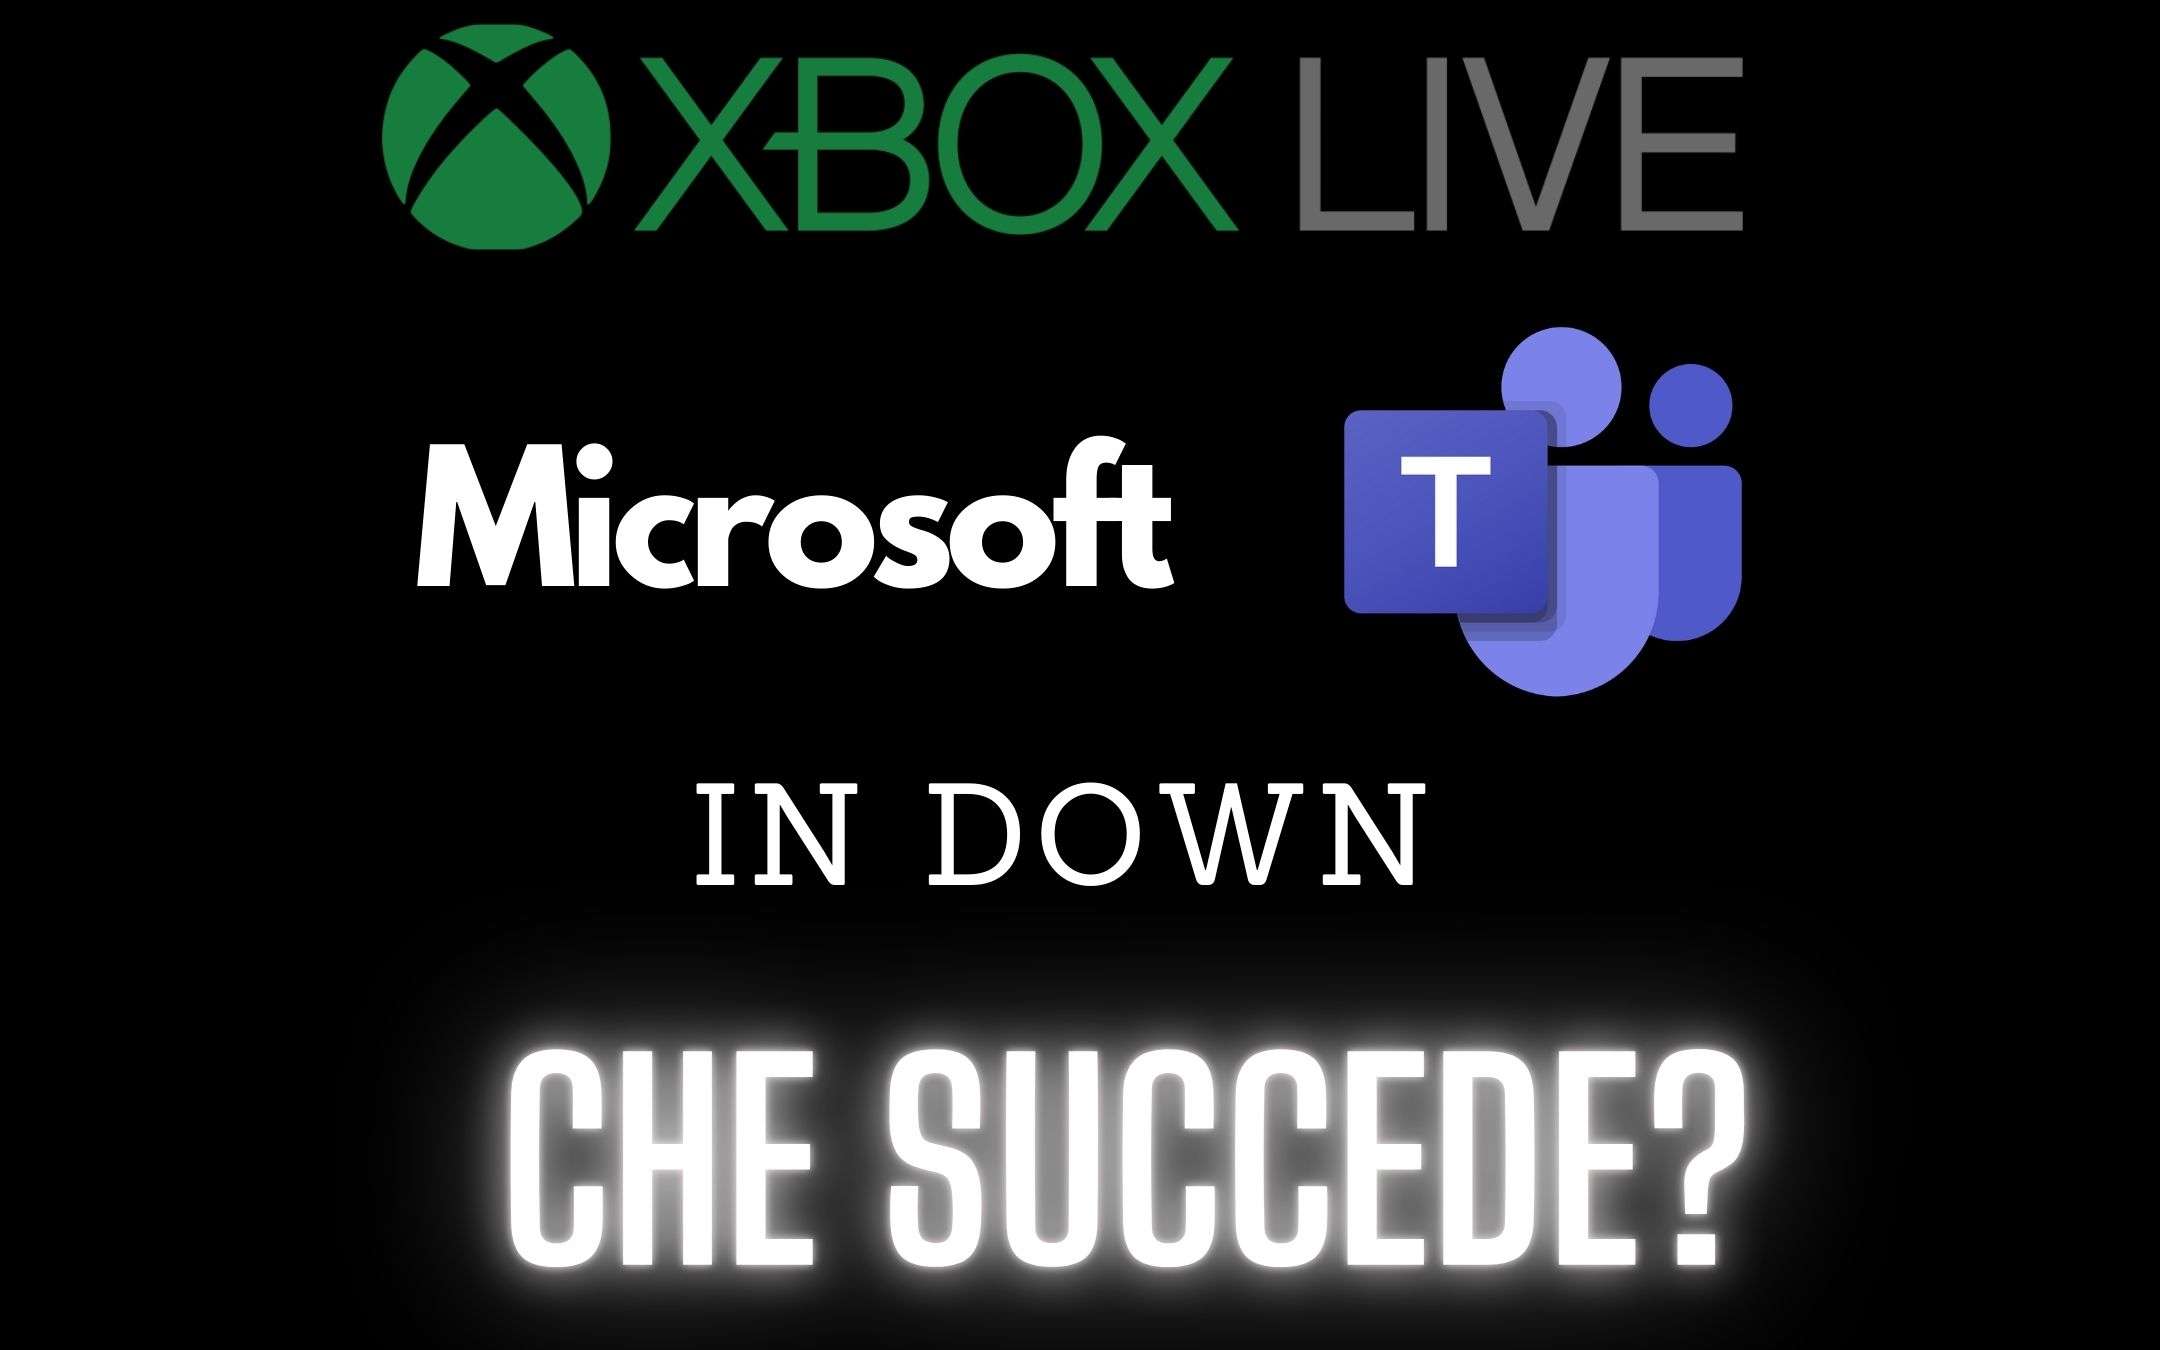 Microsoft Teams e Xbox Live in DOWN: che succede?